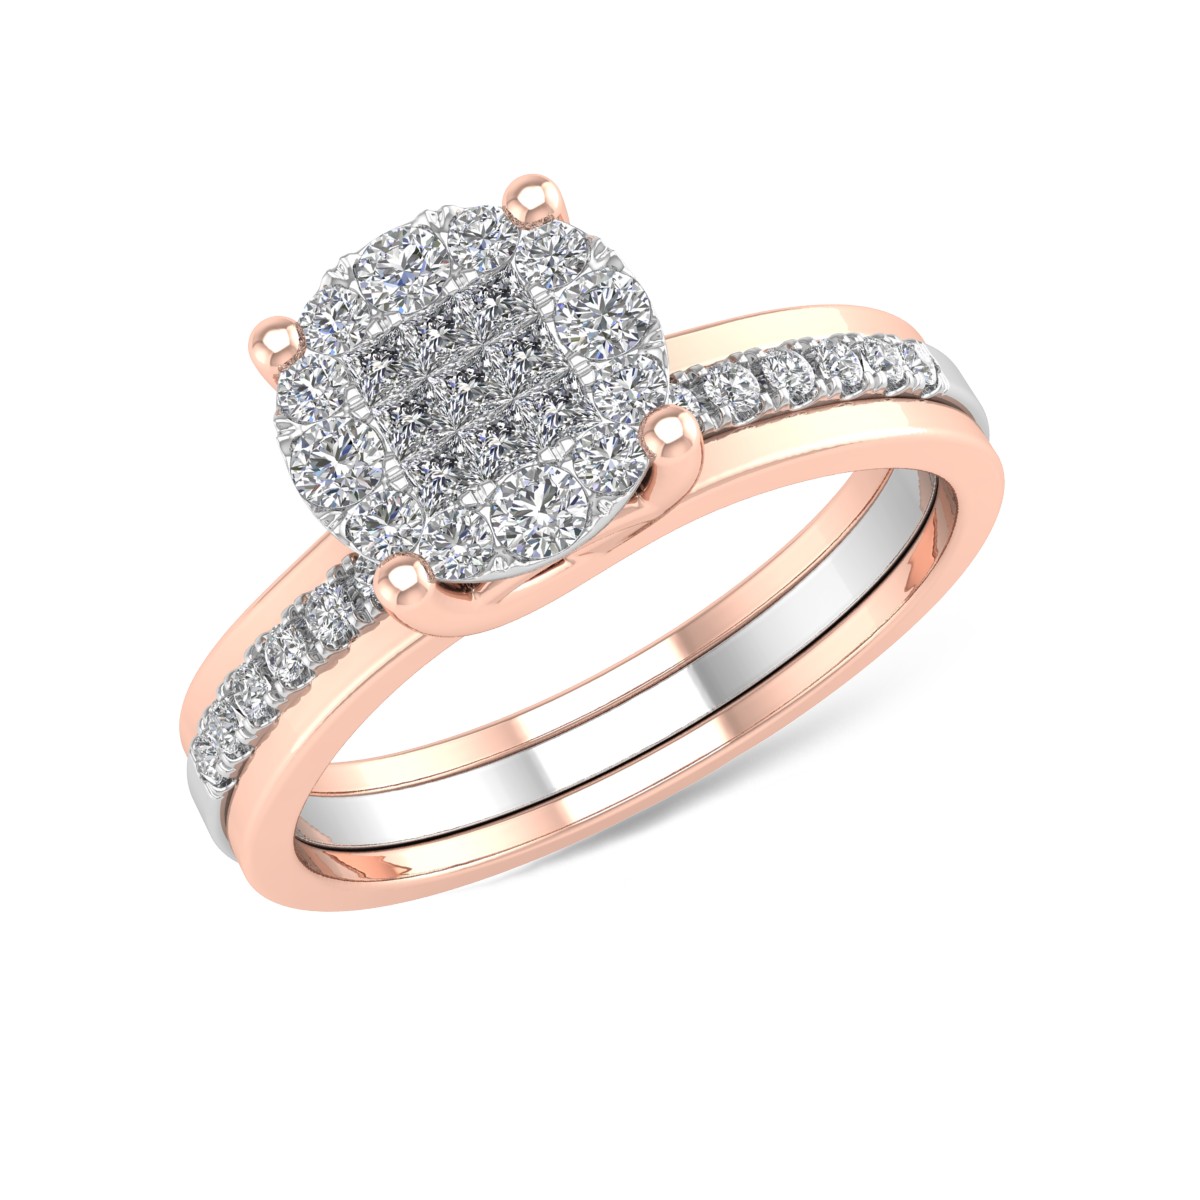 Eljegyzési gyűrű 18K-os fehér-rózsaszín aranyból 0.39ct gyémánttal. Gramm: 5,03